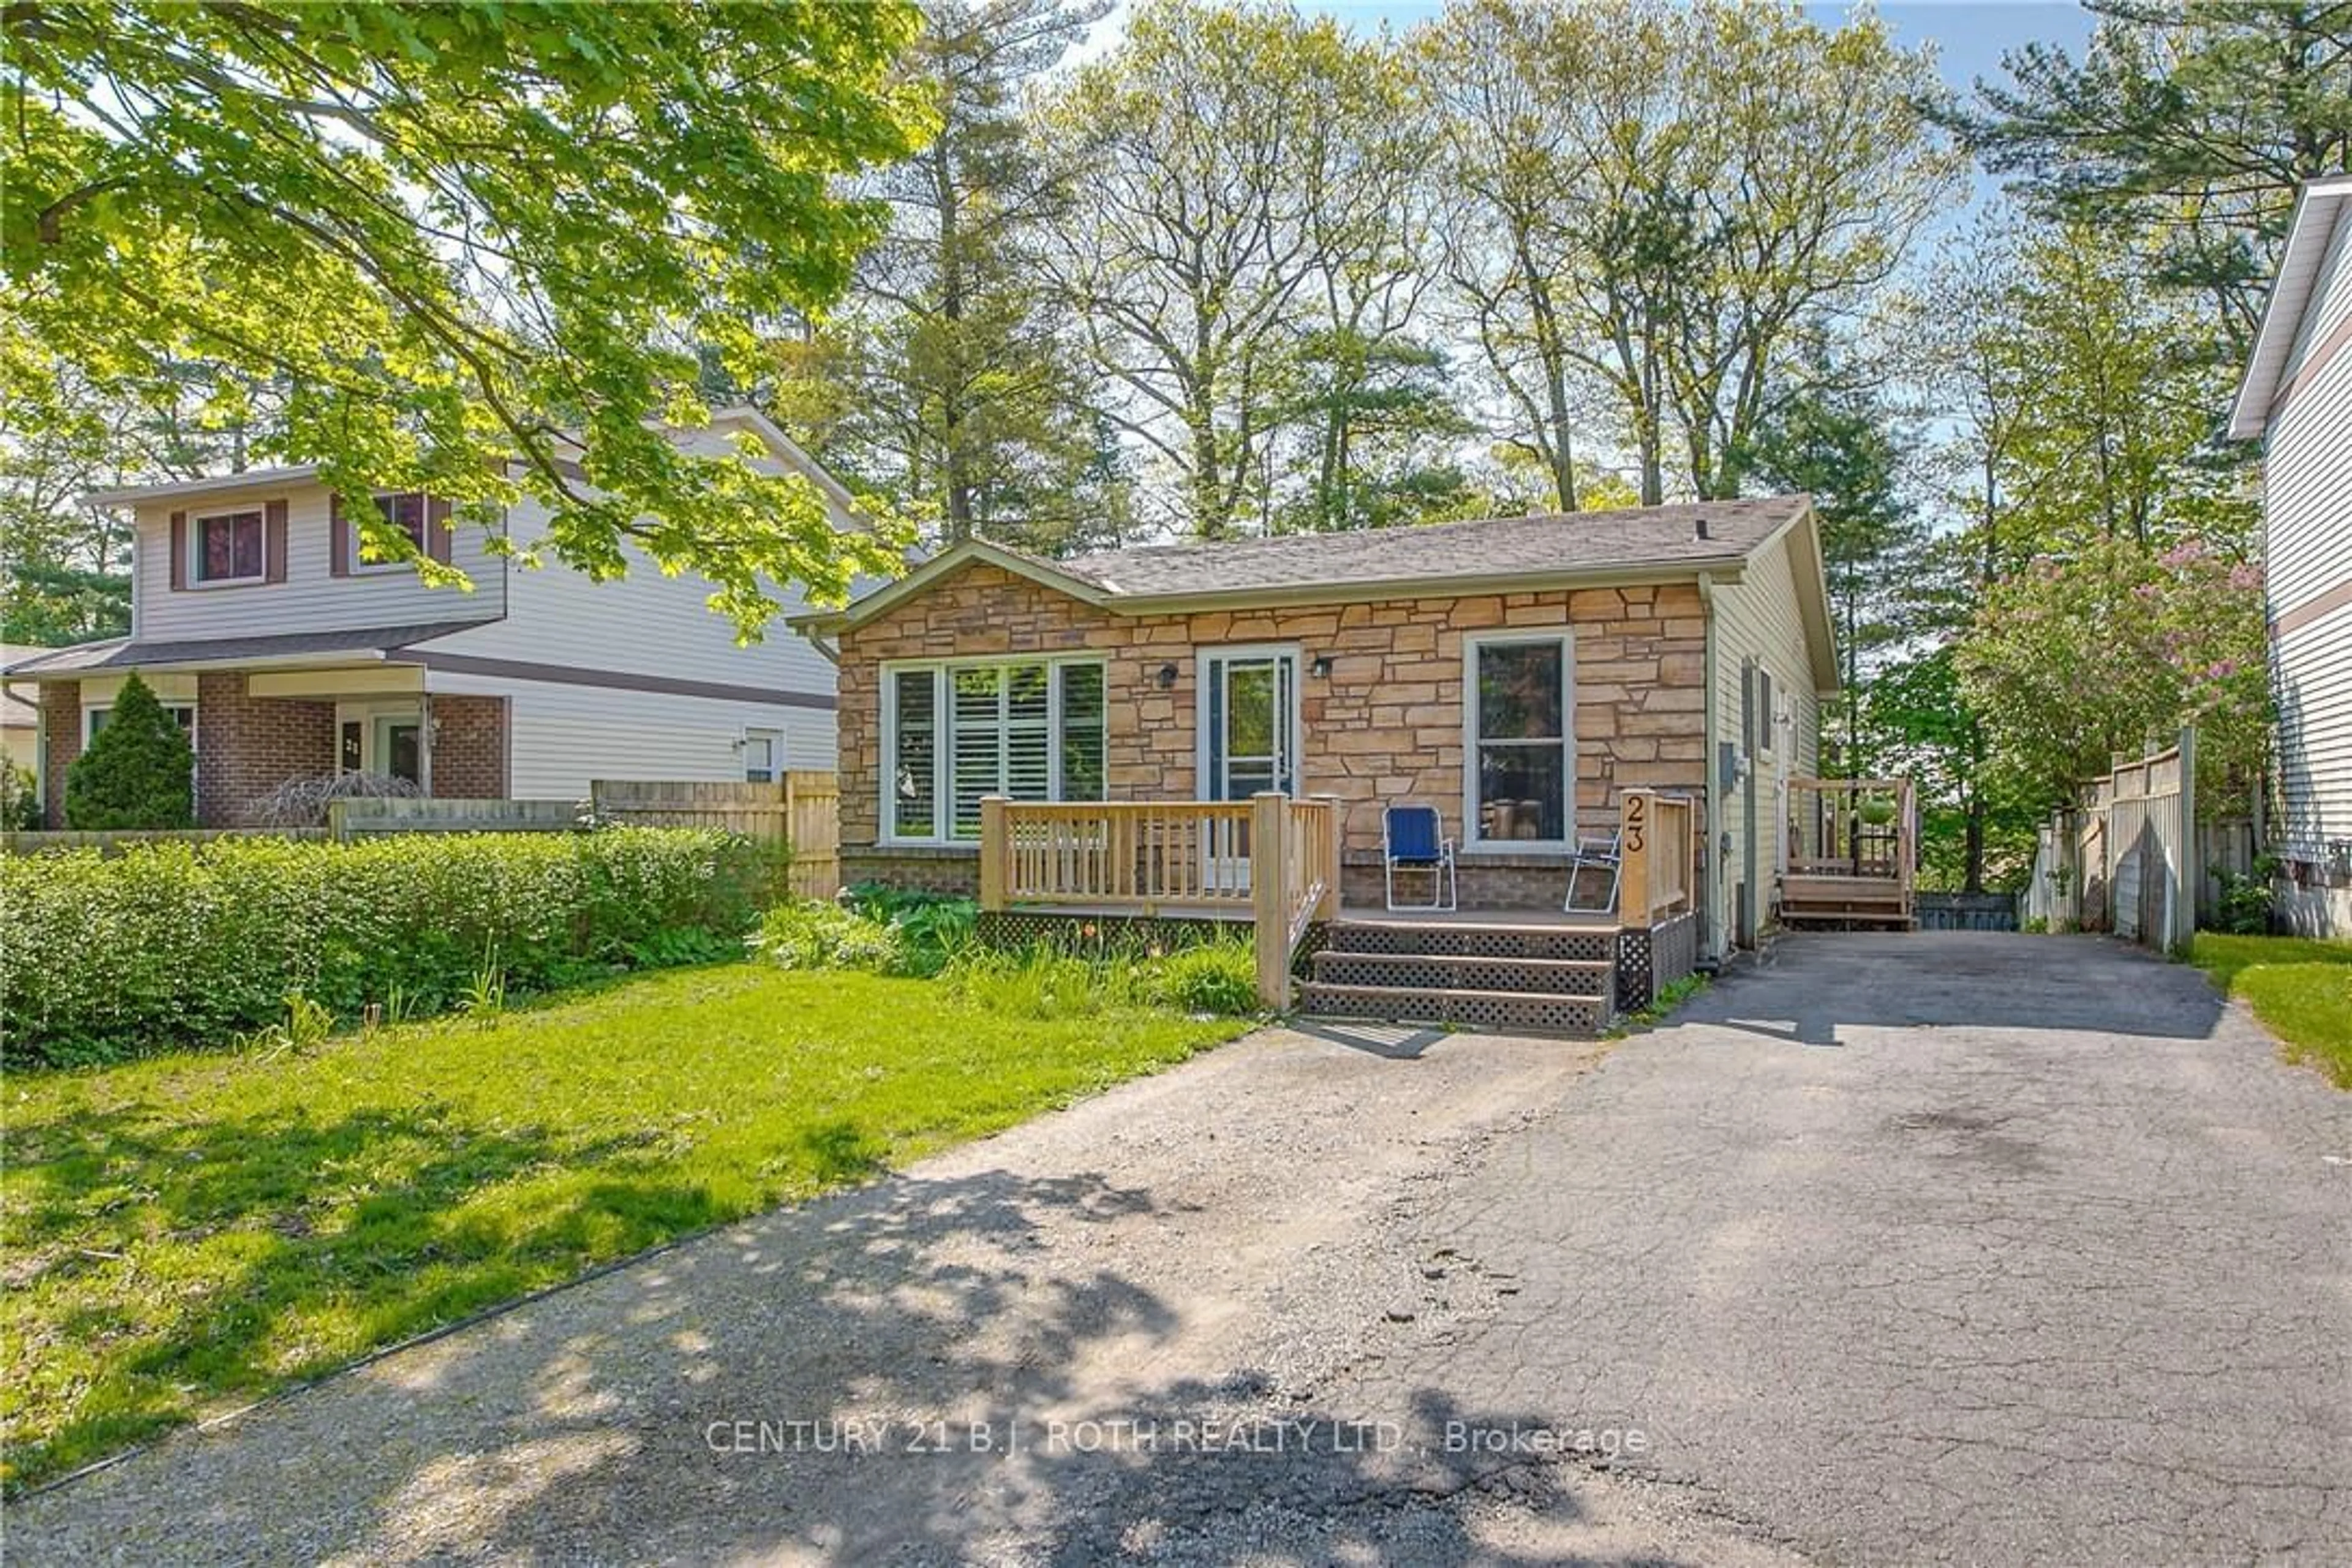 Cottage for 23 Kipling Pl, Barrie Ontario L4N 4W9